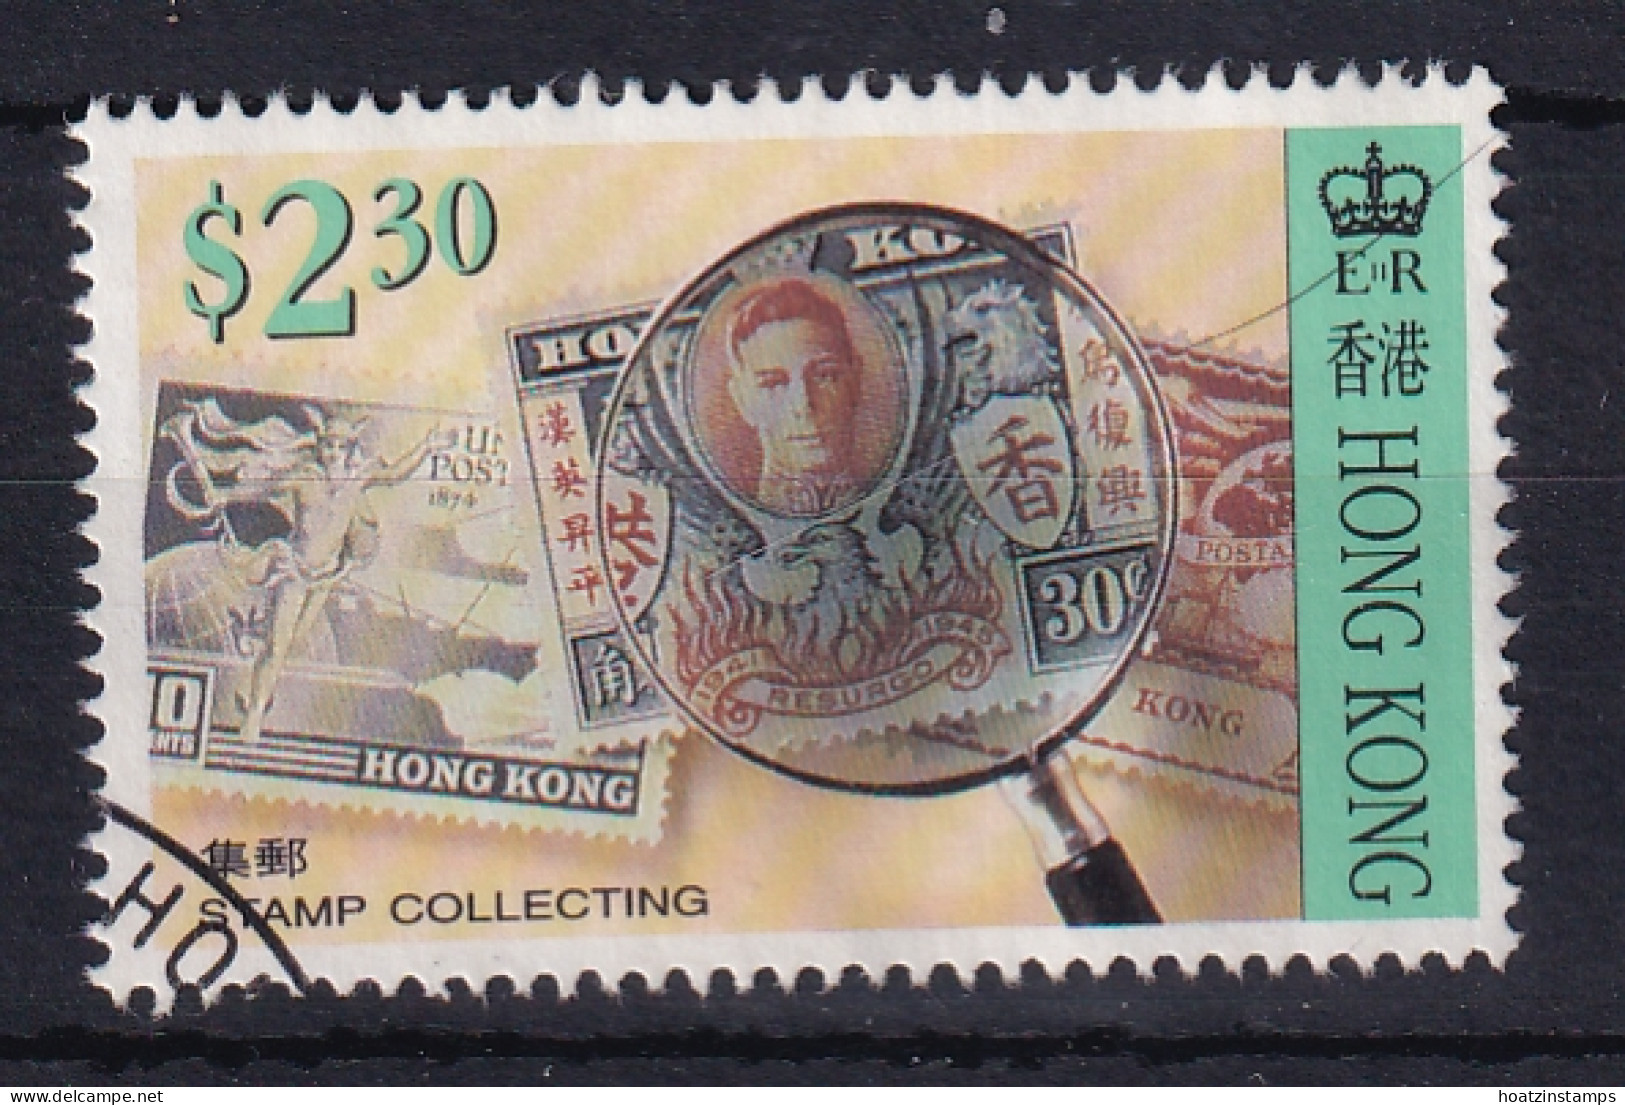 Hong Kong: 1992   Stamp Collecting   SG720    $2.30   Used  - Usados